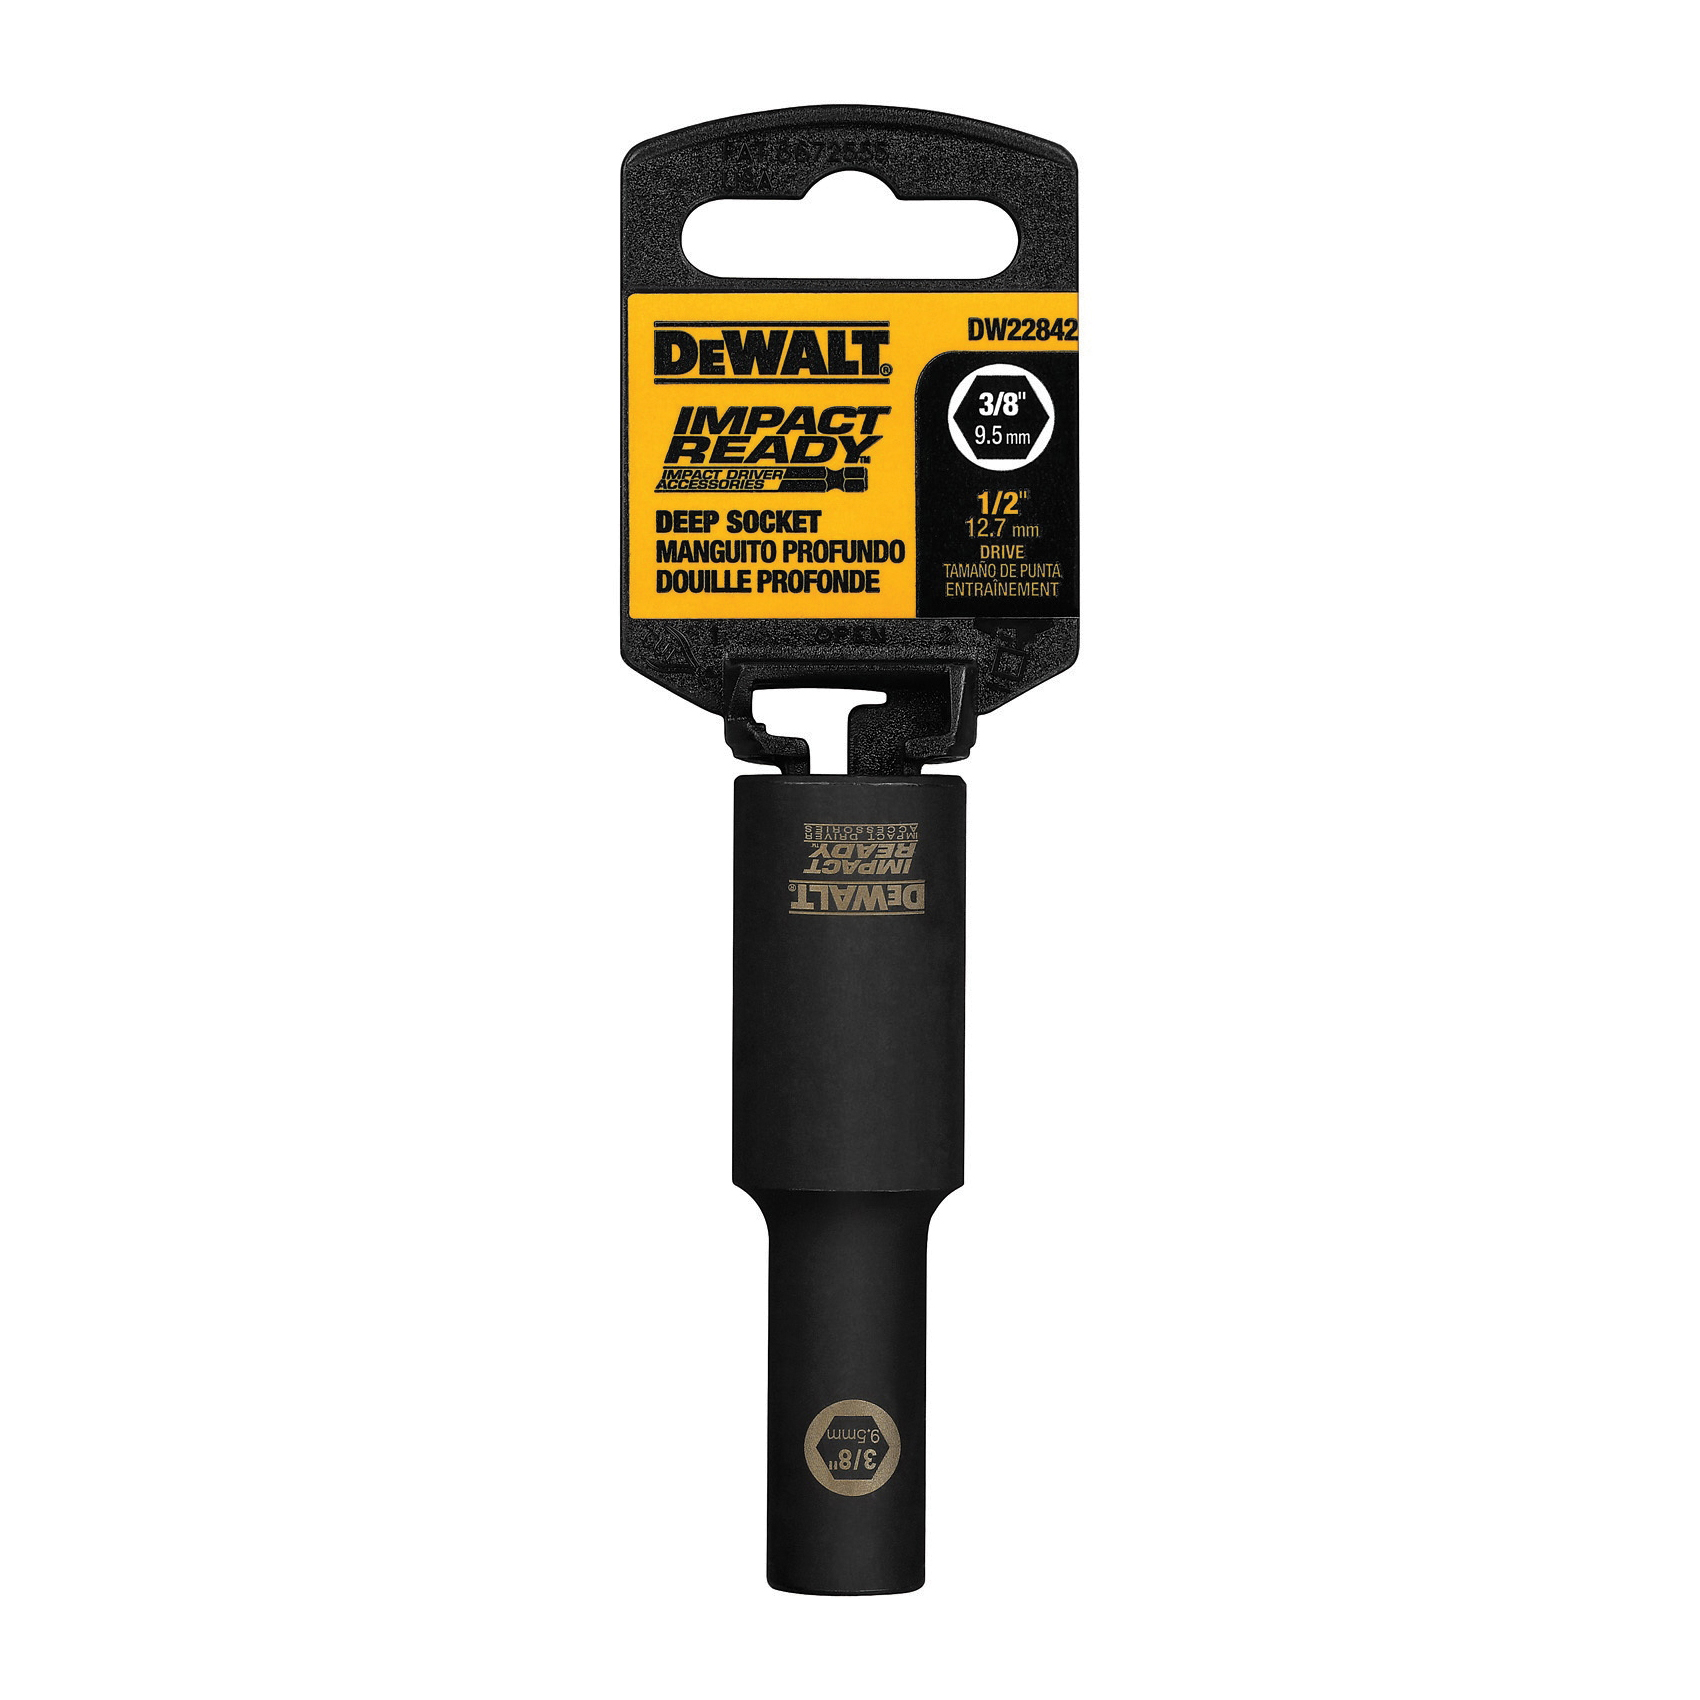 DEWALT DW22892 11/16-Inch IMPACT READY Deep Socket for 1/2-Inch Drive 